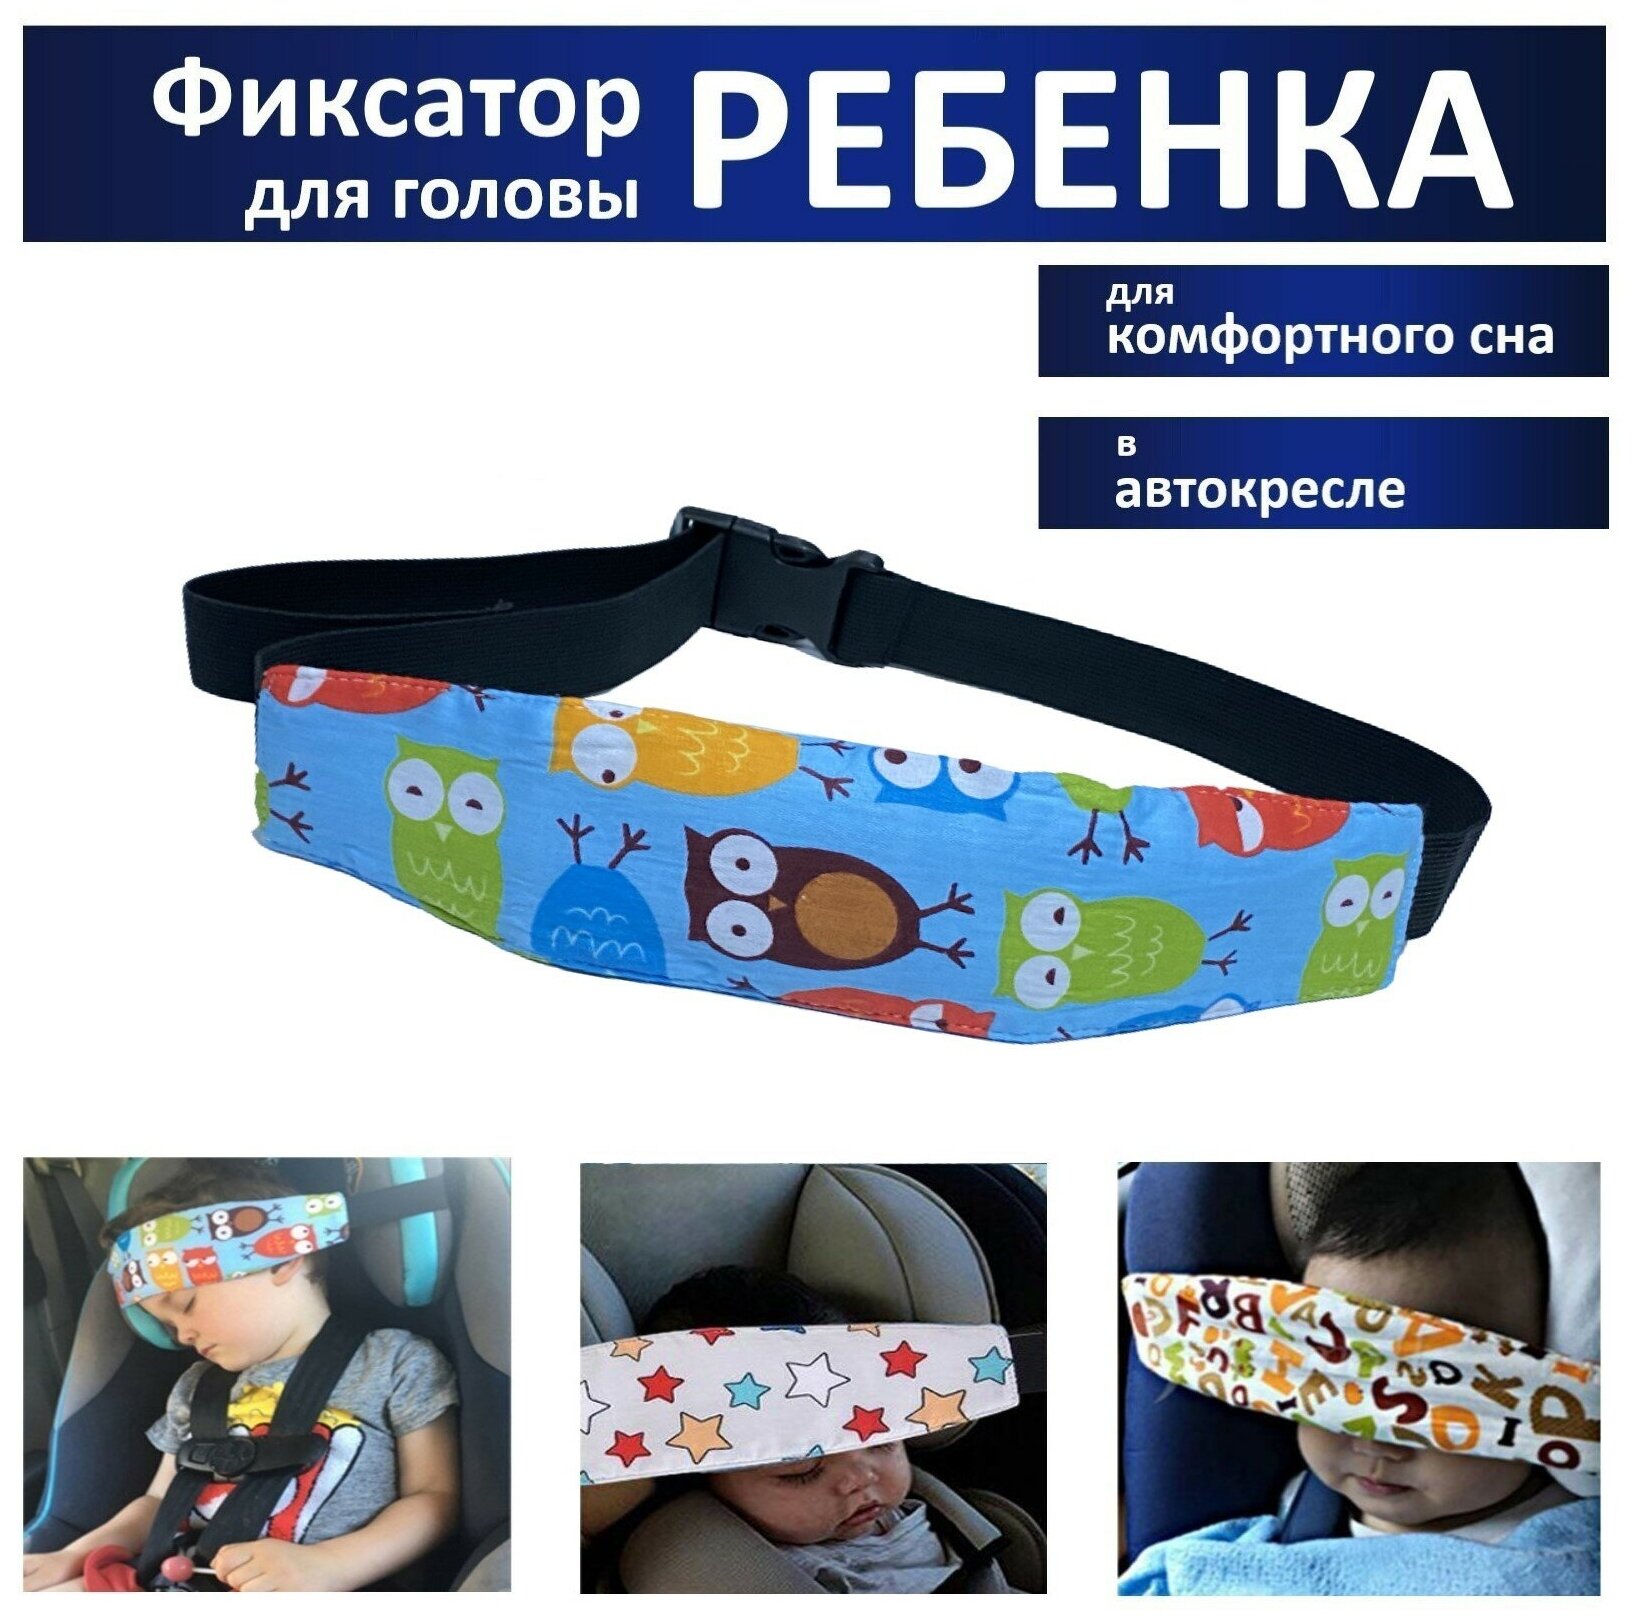 Держатель (фиксатор) для головы ребенка в автокресле детский дорожный фиксатор-повязка для безопасного сна в машине Сова